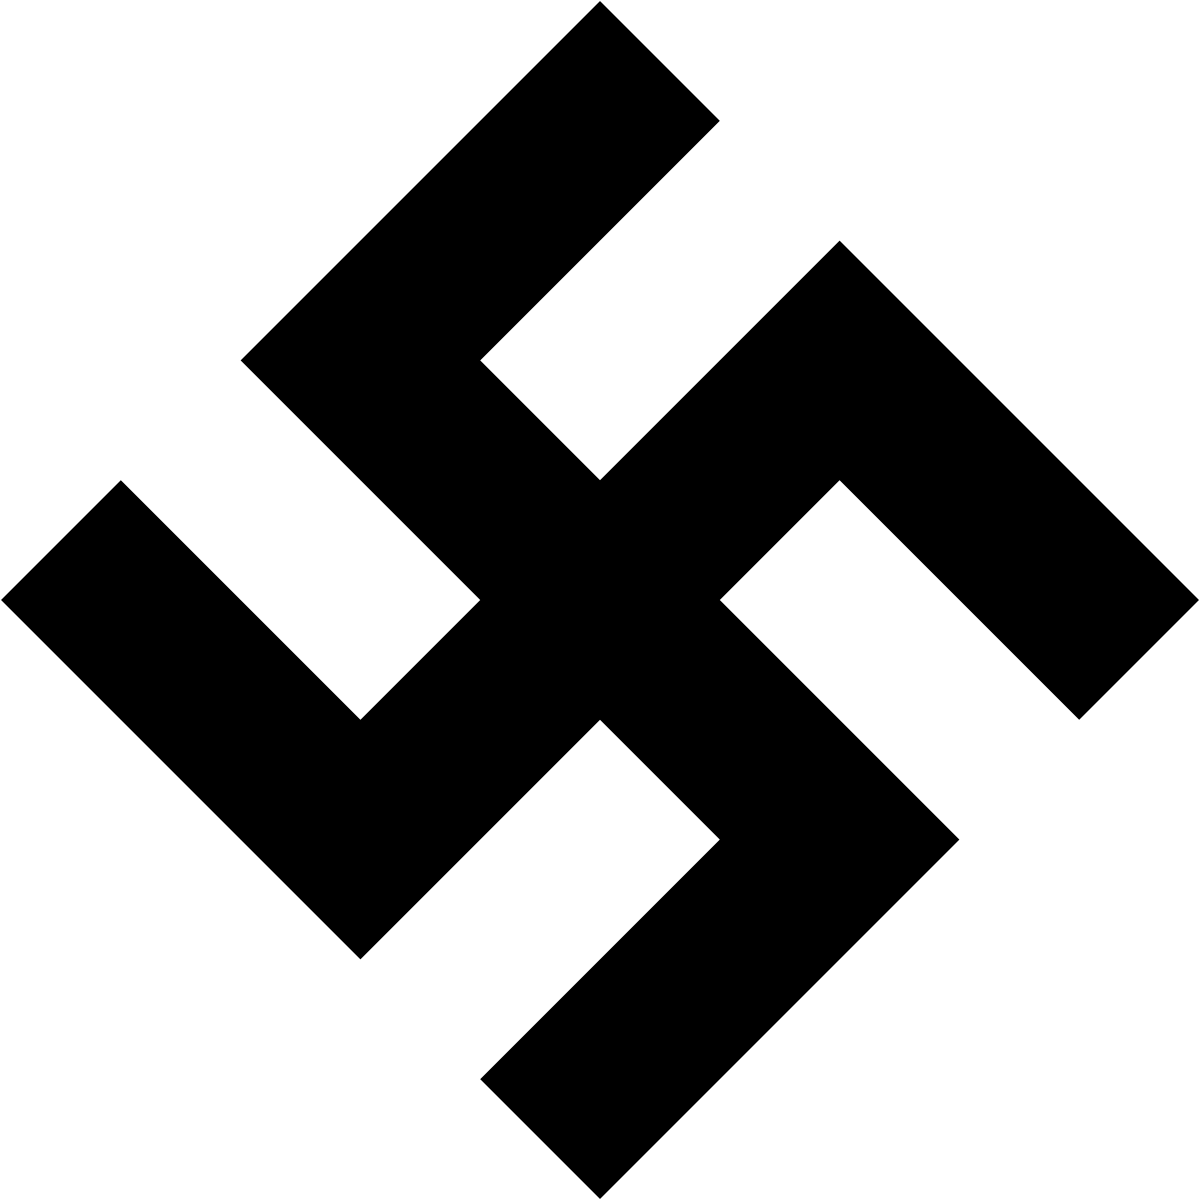 Nazi SS Logo - Nazi symbolism